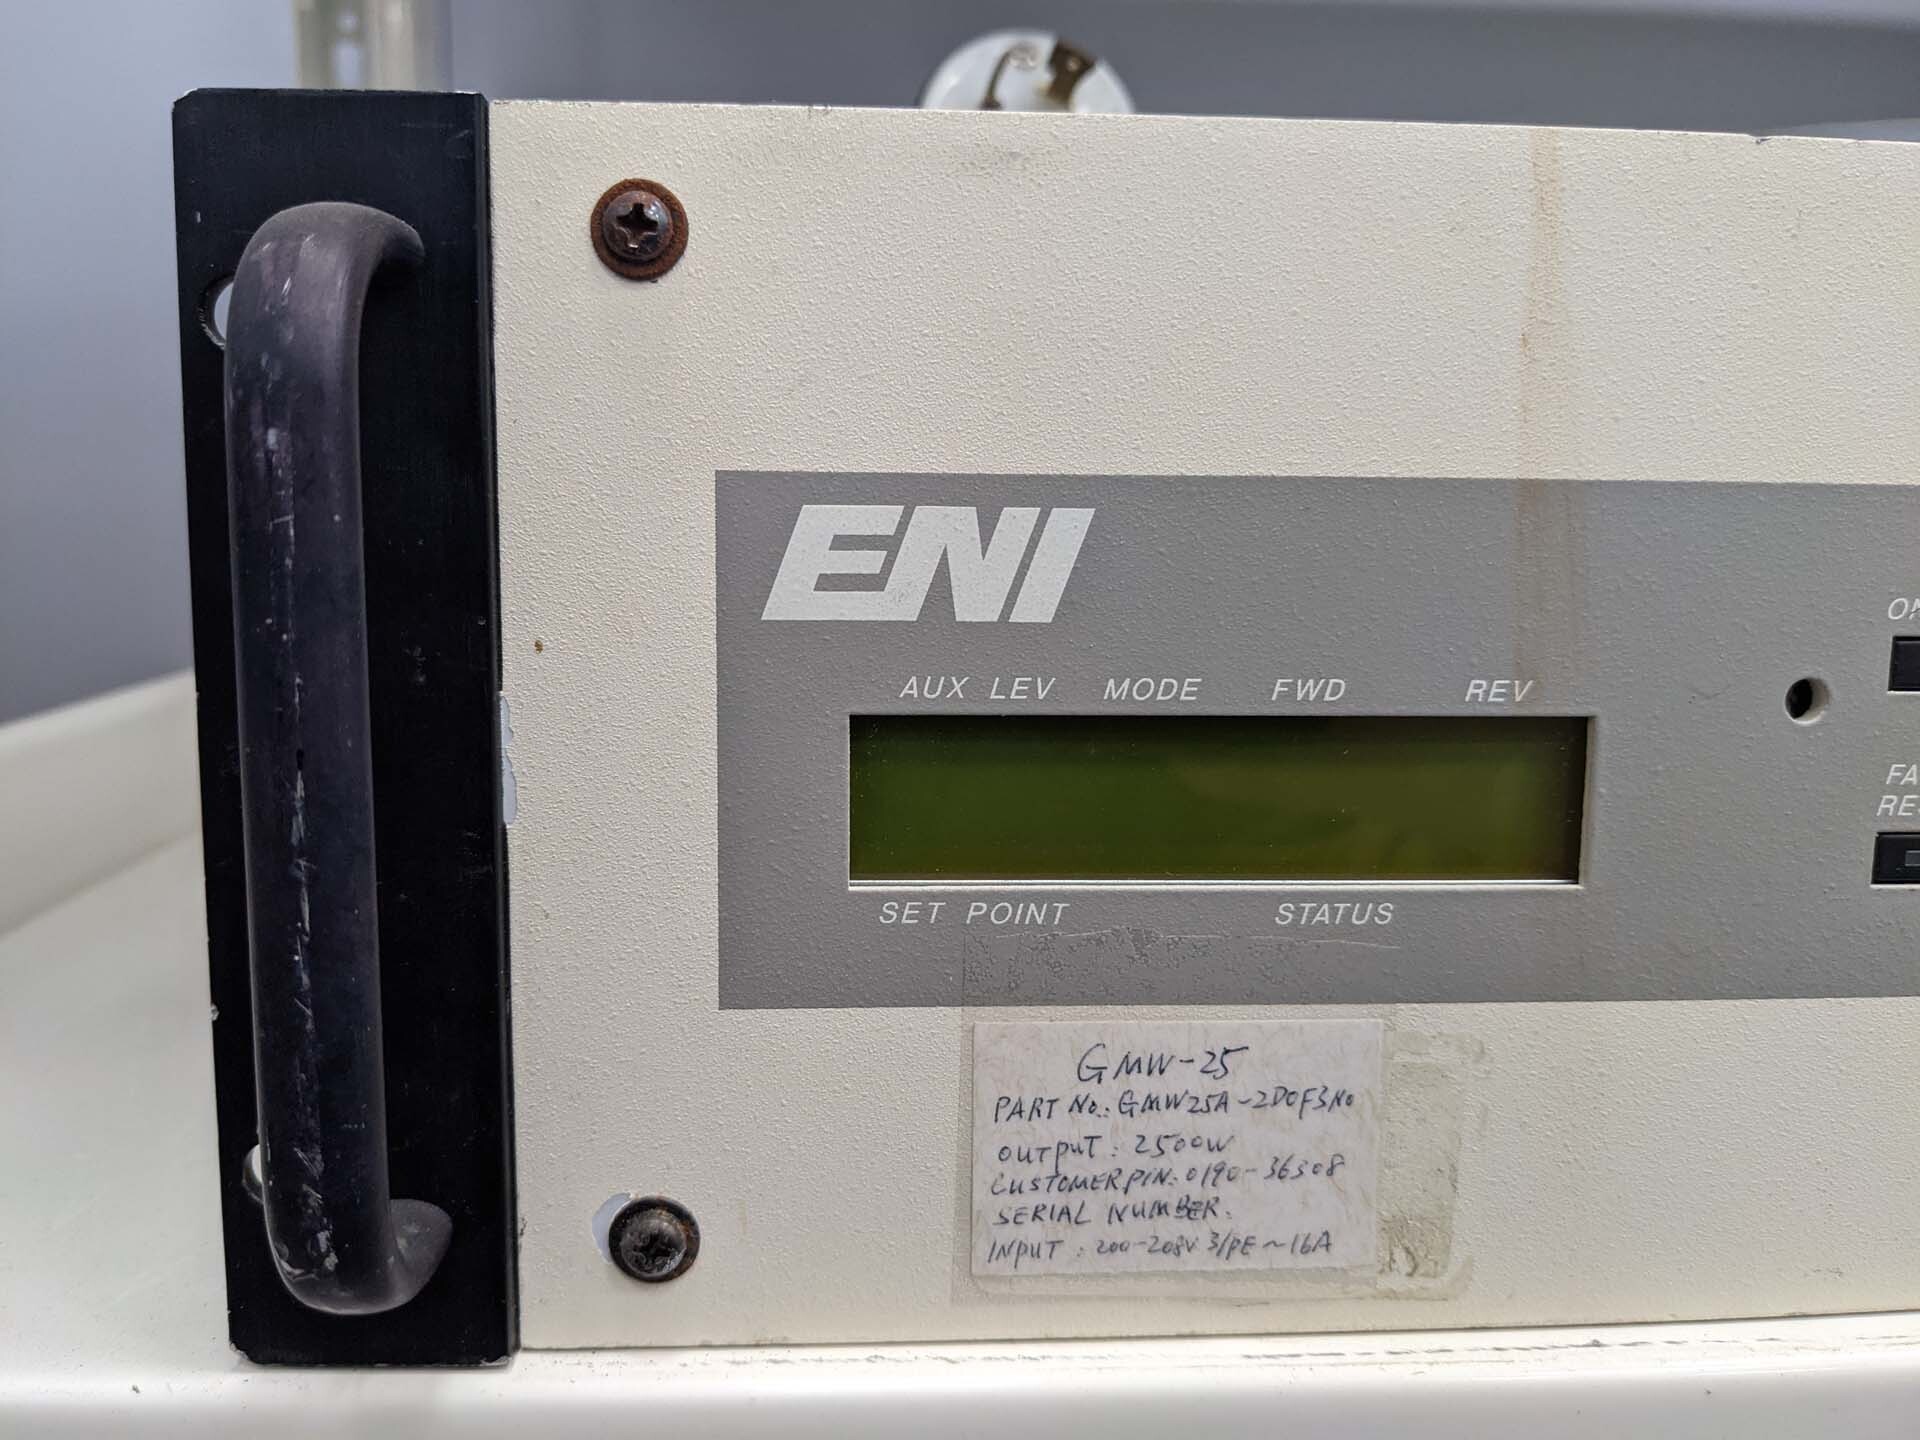 圖為 已使用的 ENI GMW-25 待售